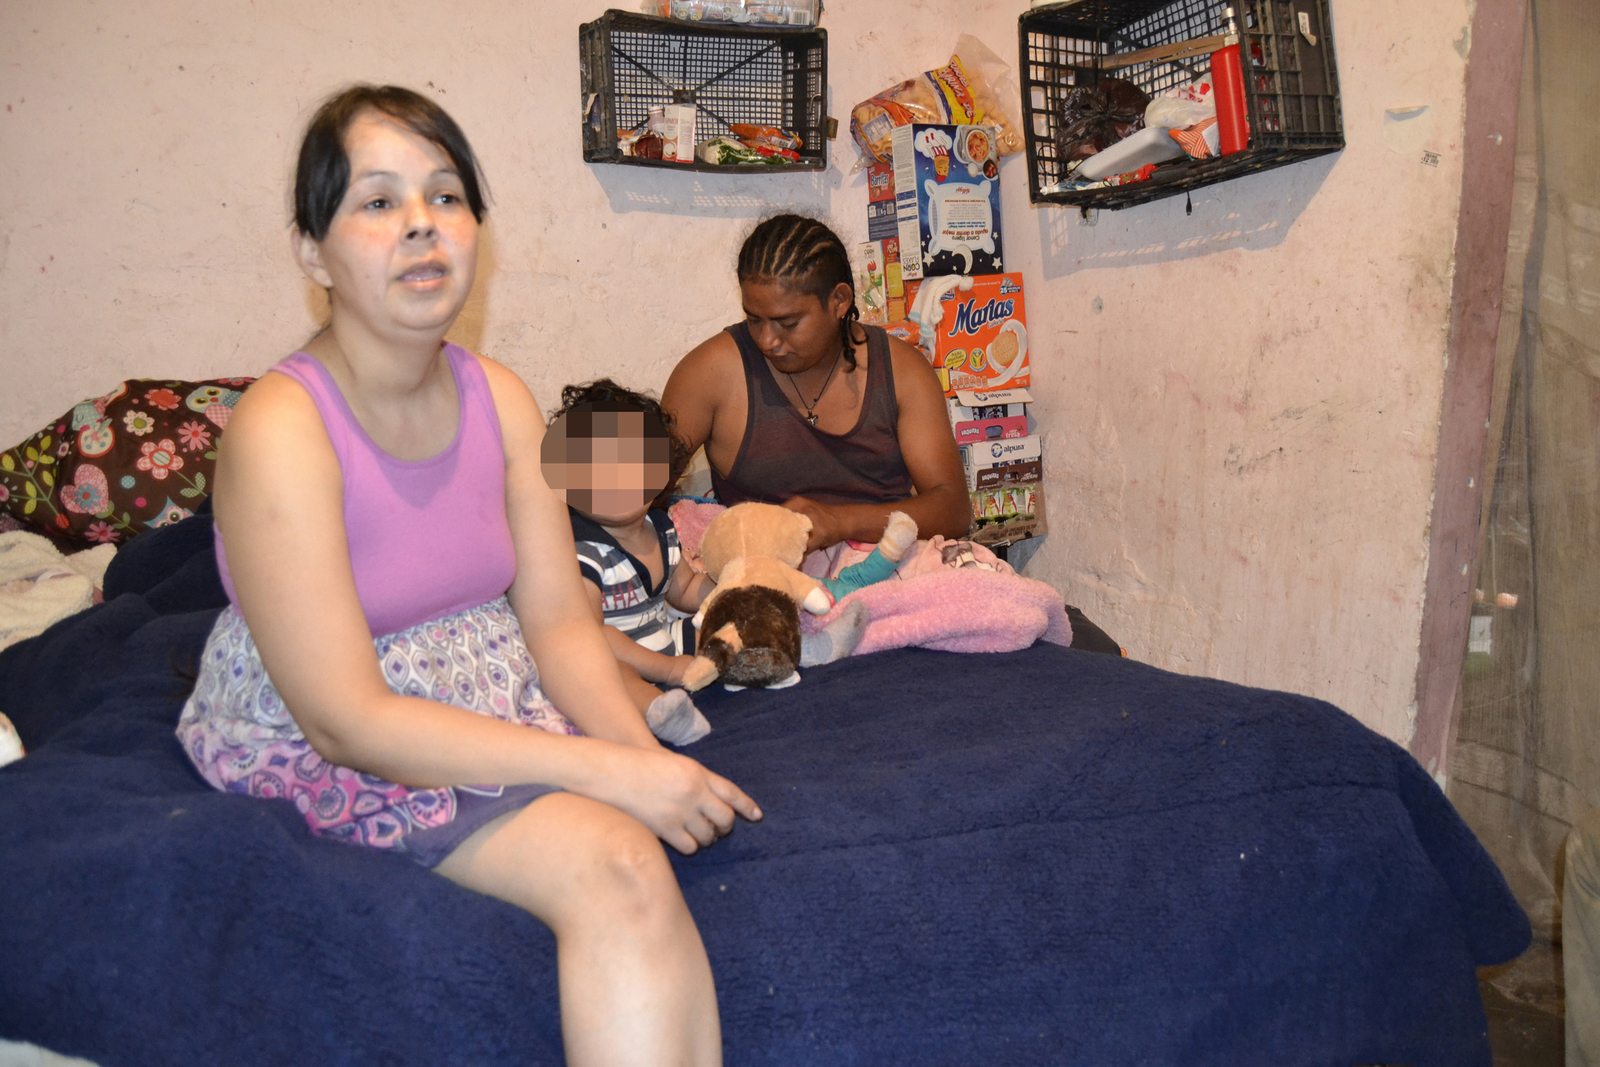 Se unen. Ayuda ciudadanía a Adriana y a sus dos pequeños con comida, ropa y electrodomésticos. (EDITH GONZÁLEZ)